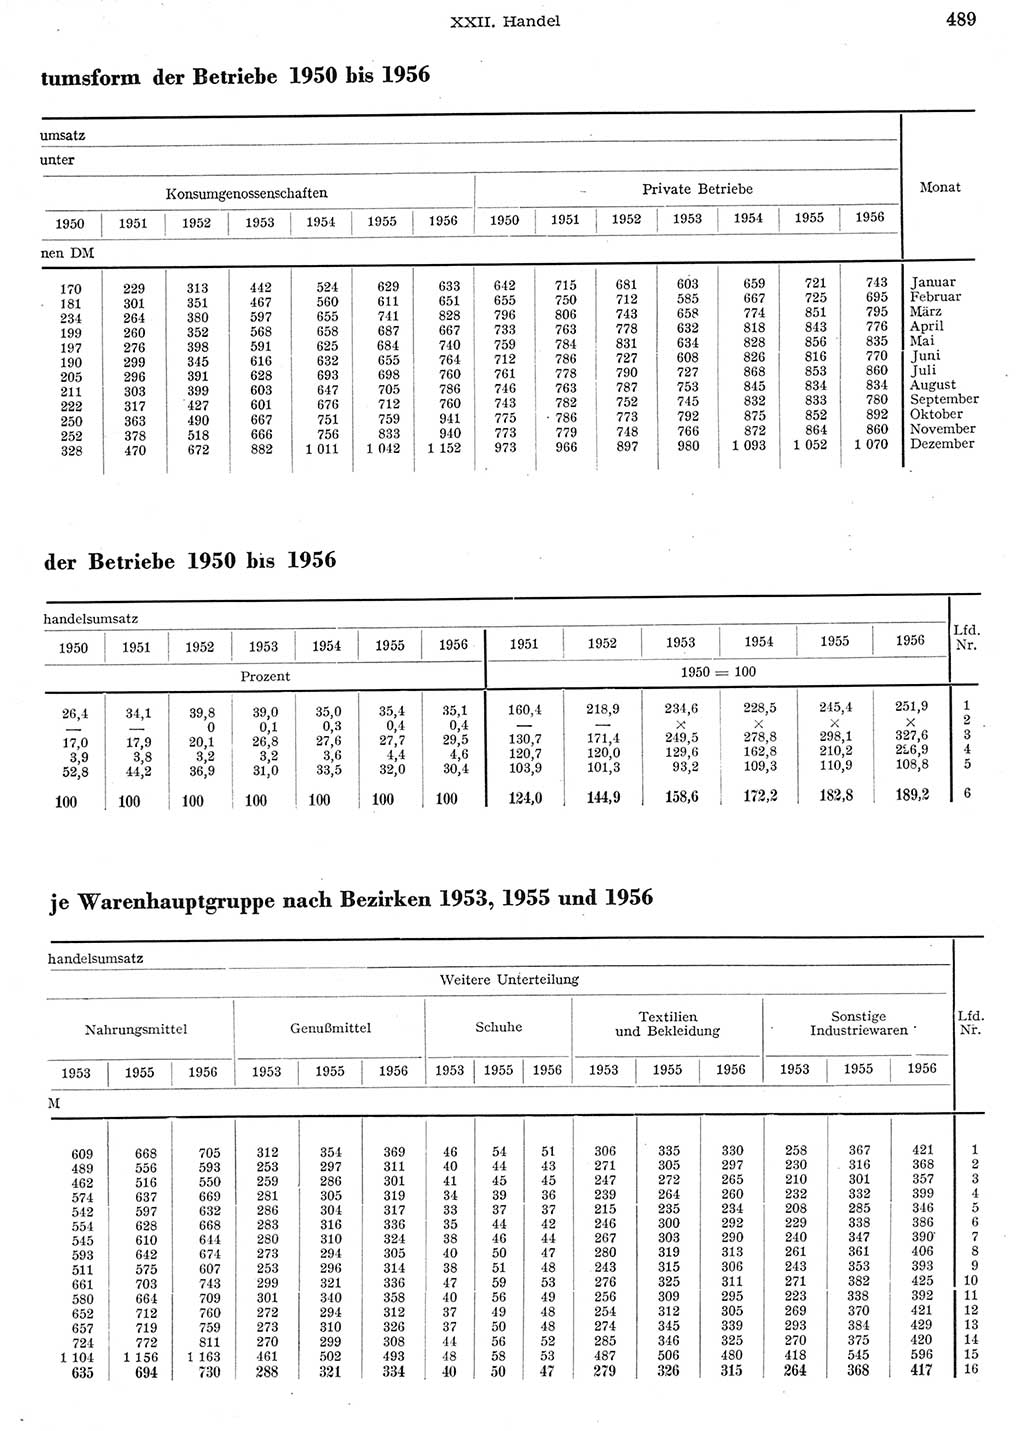 Statistisches Jahrbuch der Deutschen Demokratischen Republik (DDR) 1956, Seite 489 (Stat. Jb. DDR 1956, S. 489)